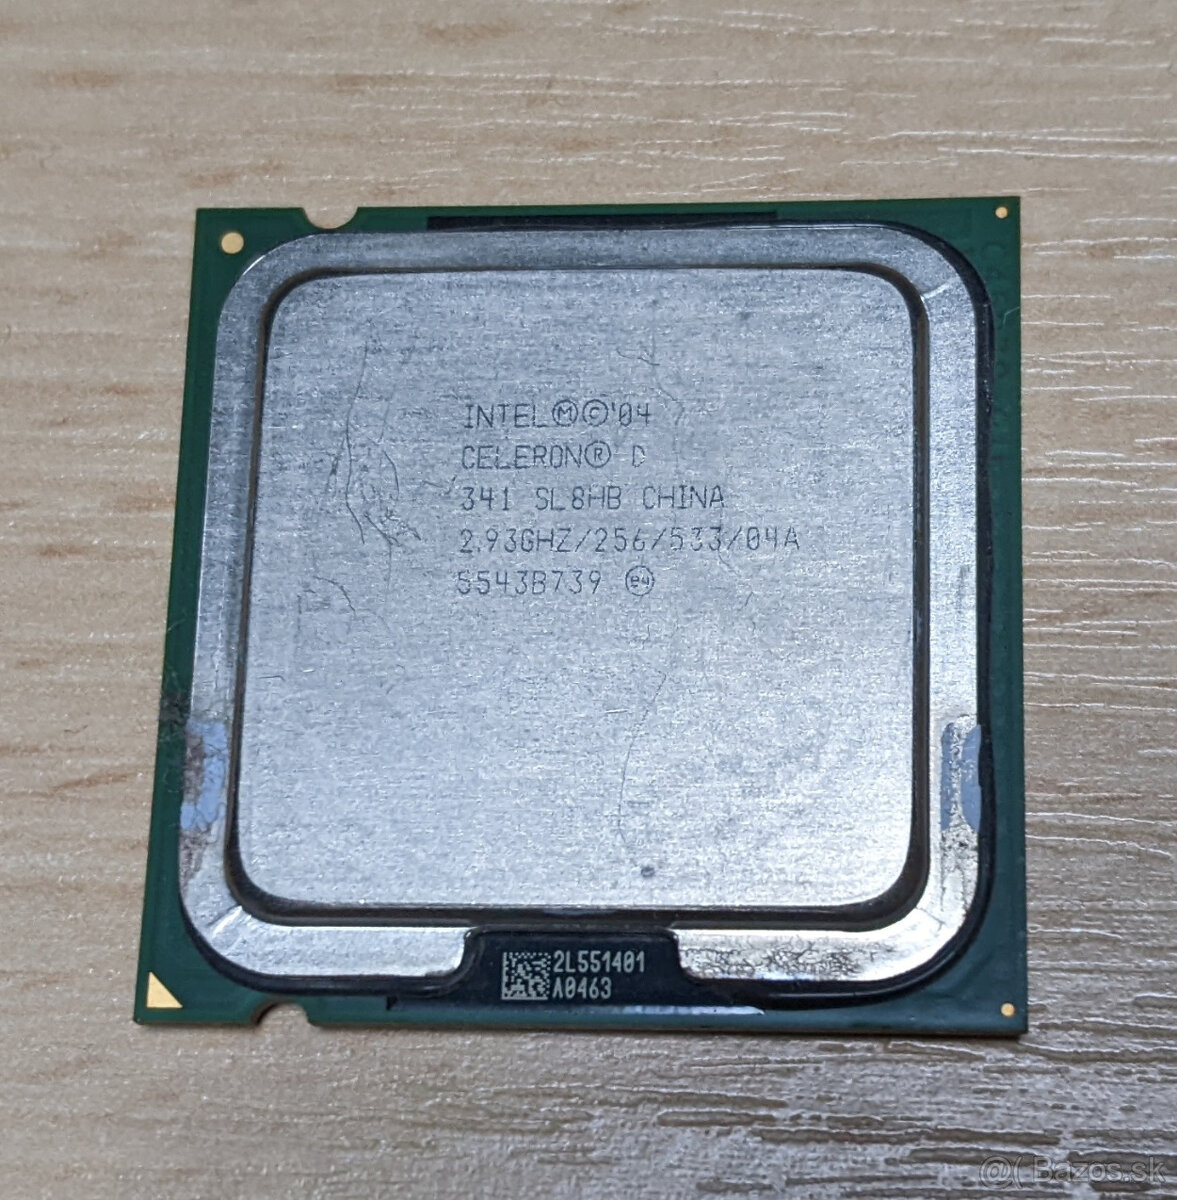 Intel Celeron D 341 procesor (PLGA478, PLGA775)